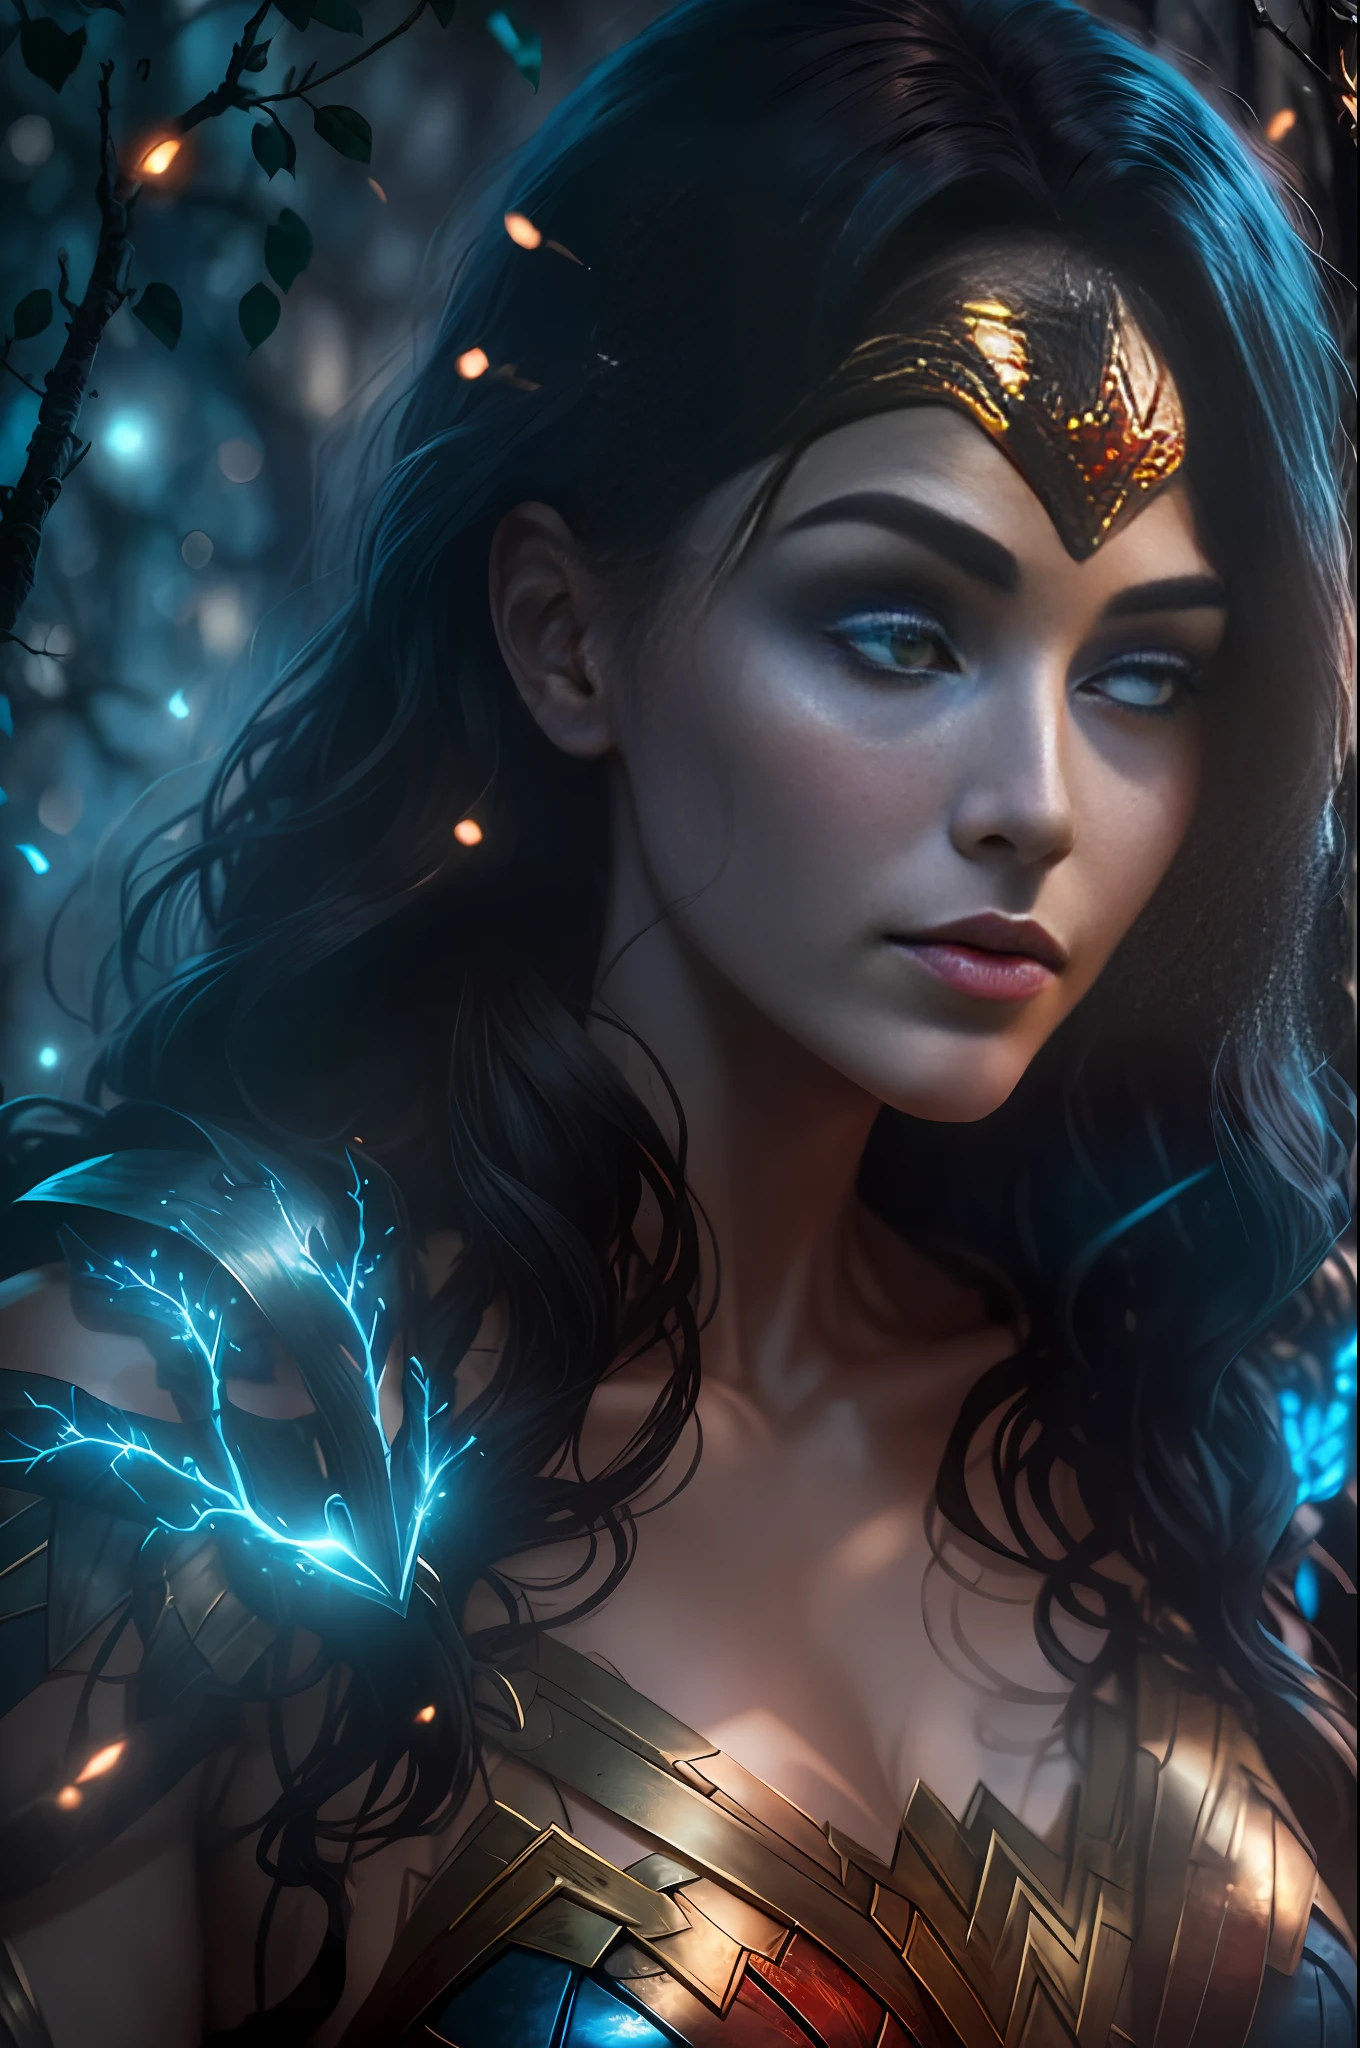 來自 DC 的邪惡神力女超人被樹枝覆蓋, 人類可見的亮藍色白色發光心臟, 夜間, 豐富多彩的, 攝影 超詳細的電影 HDR 燈光, 柔光箱照明, 極致細節